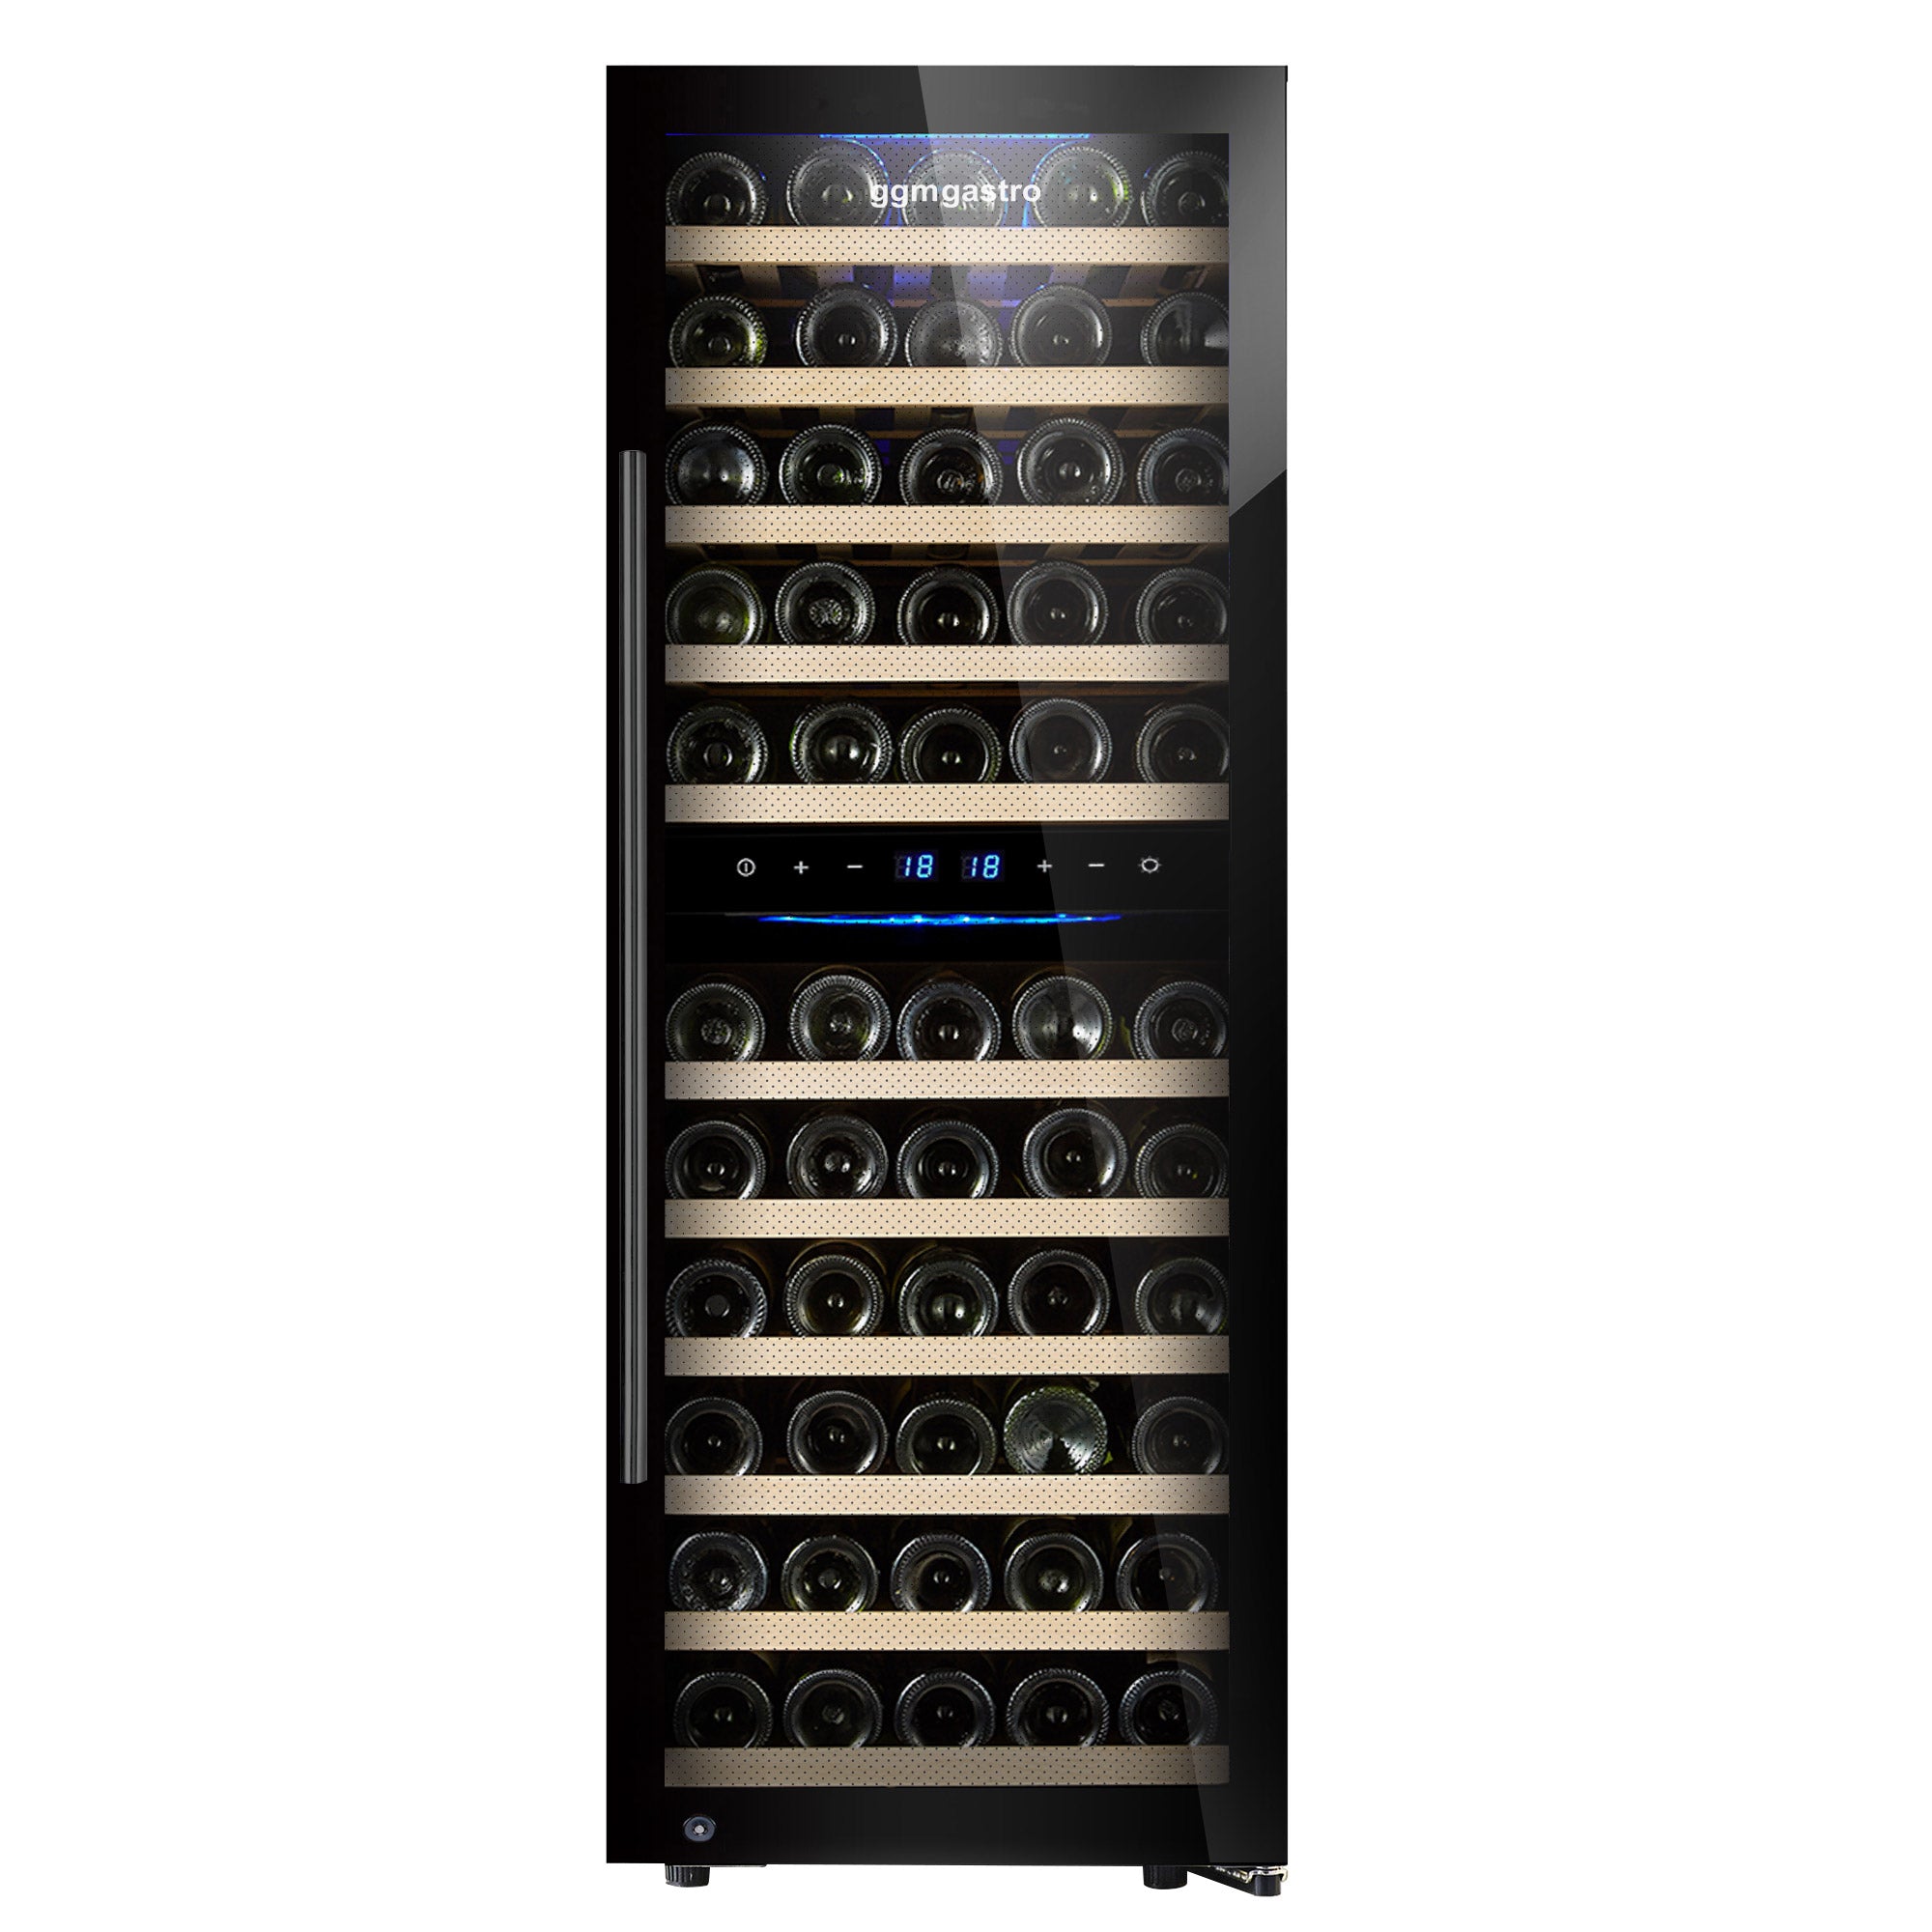 Vinkjøleskap - 192 liter - svart / med 2 klimasoner